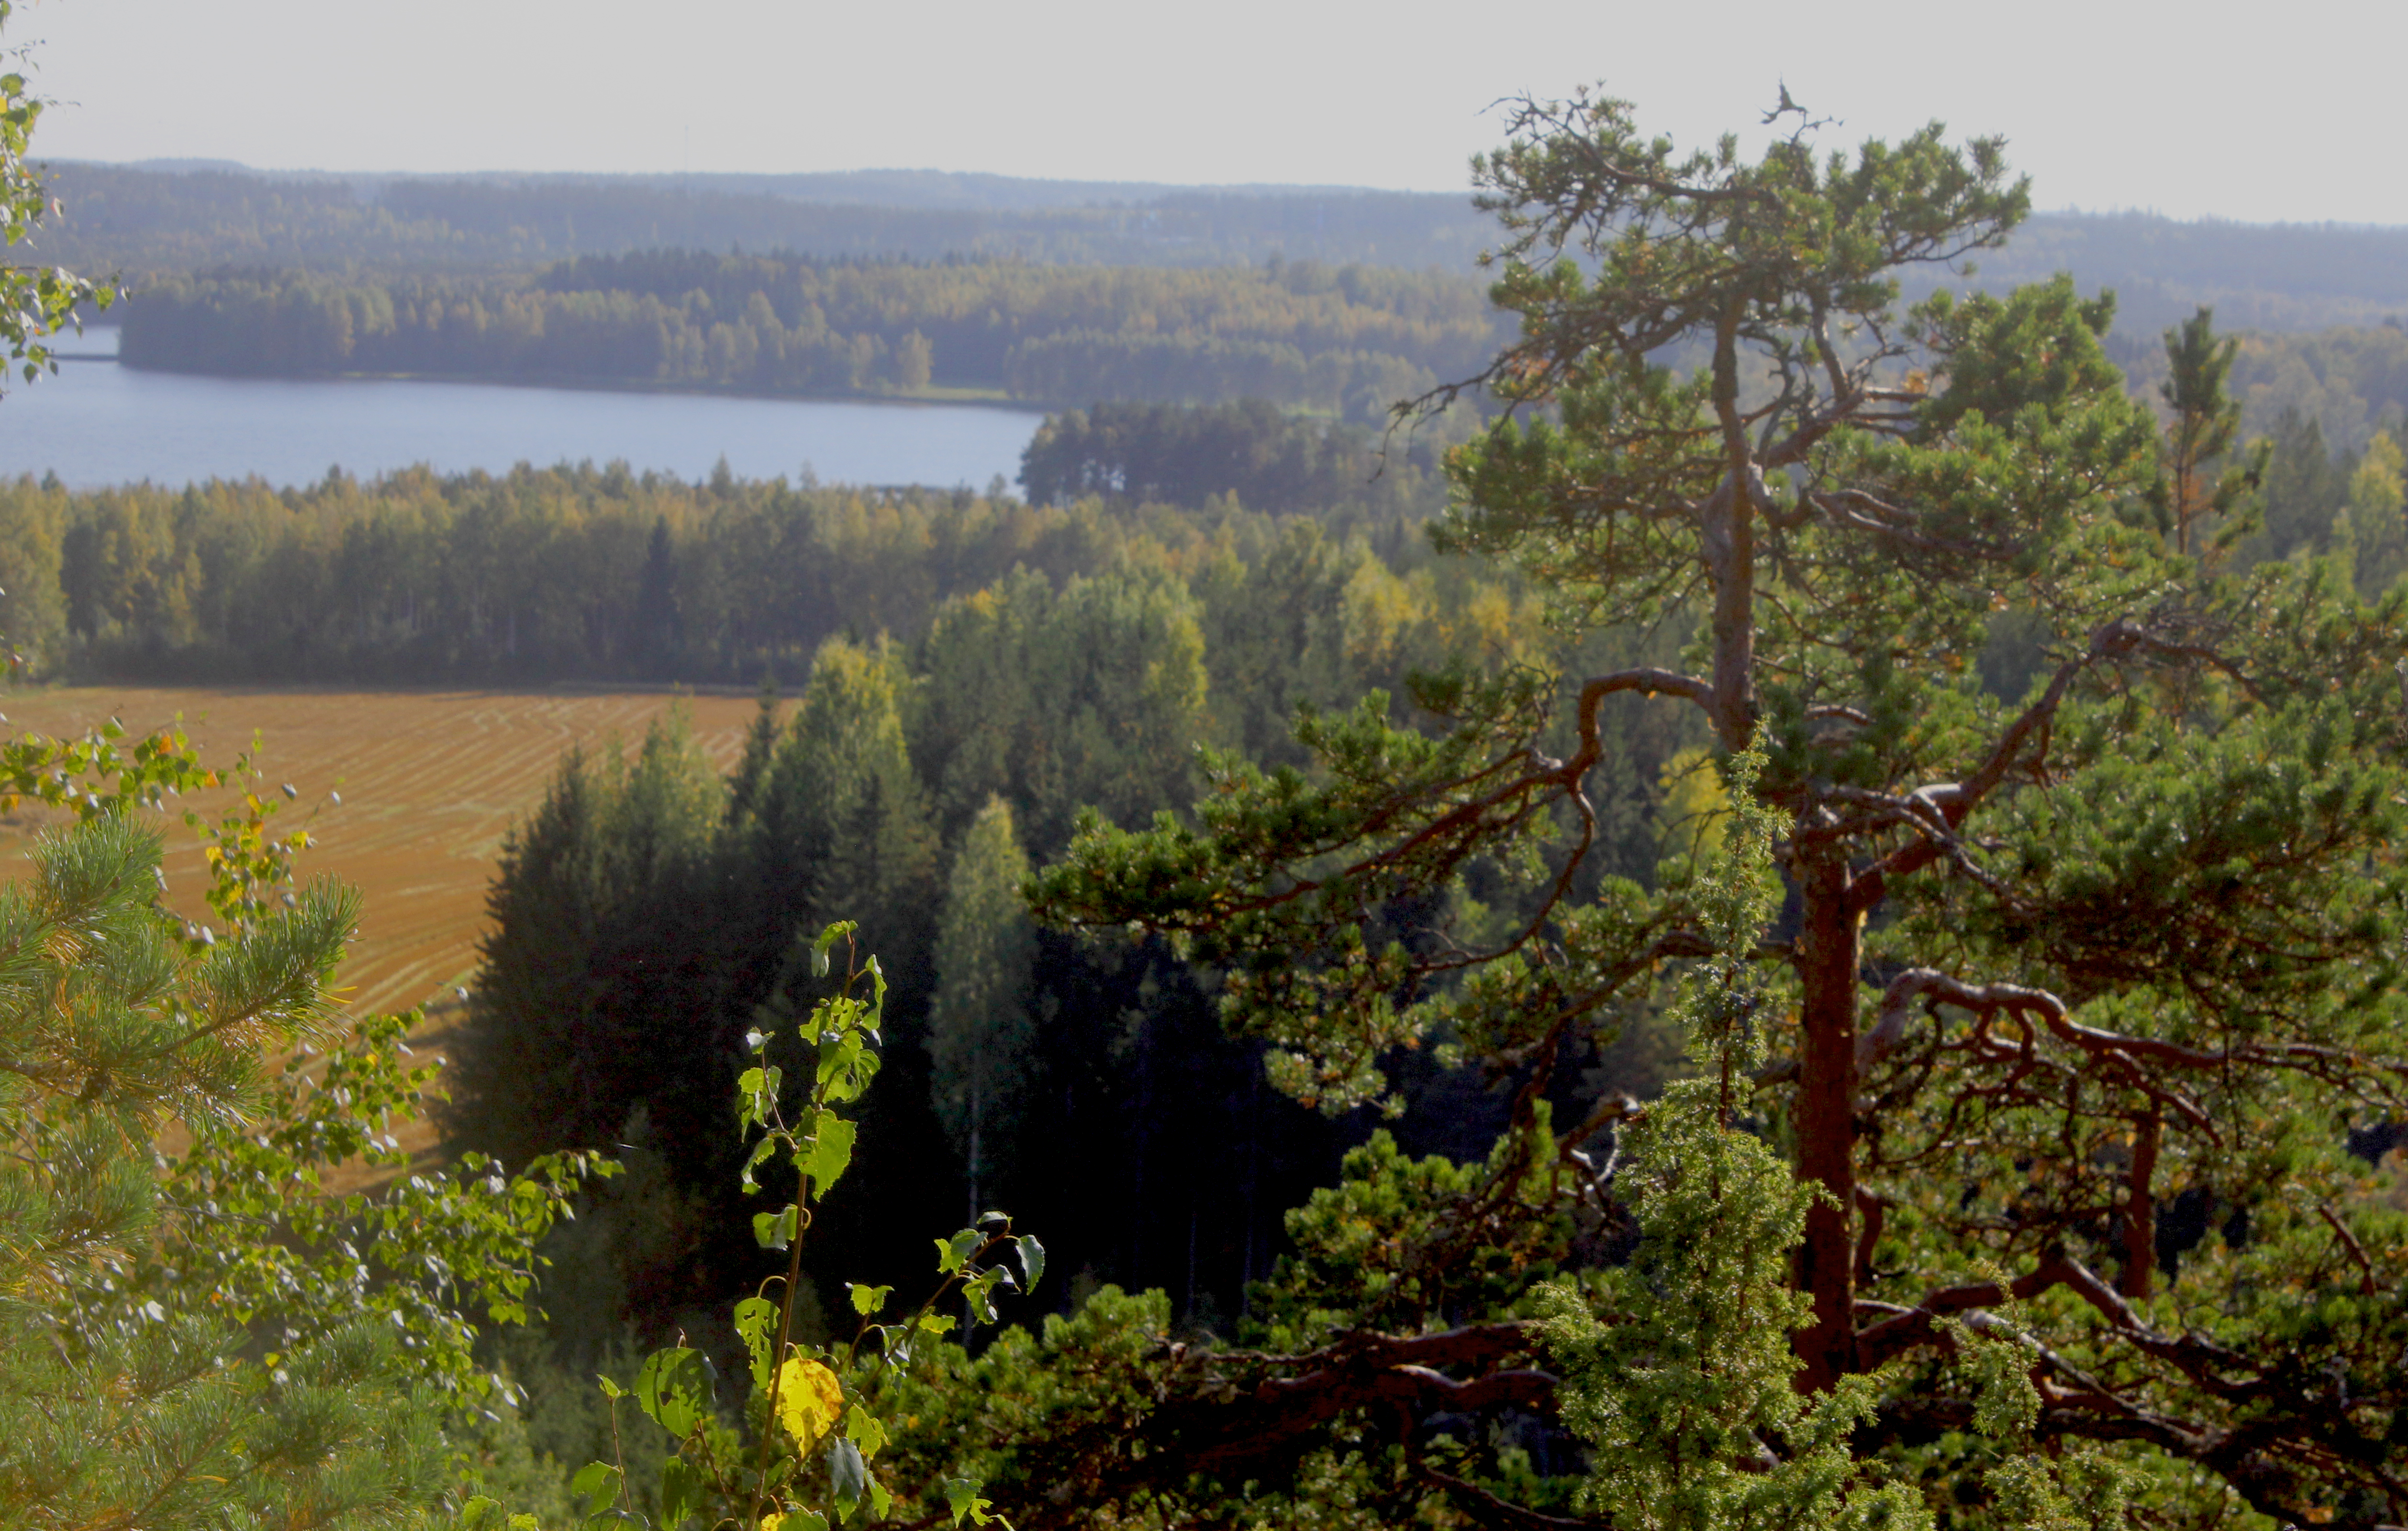 View from Määkymäki hill in Laurinmäki, Janakkala.